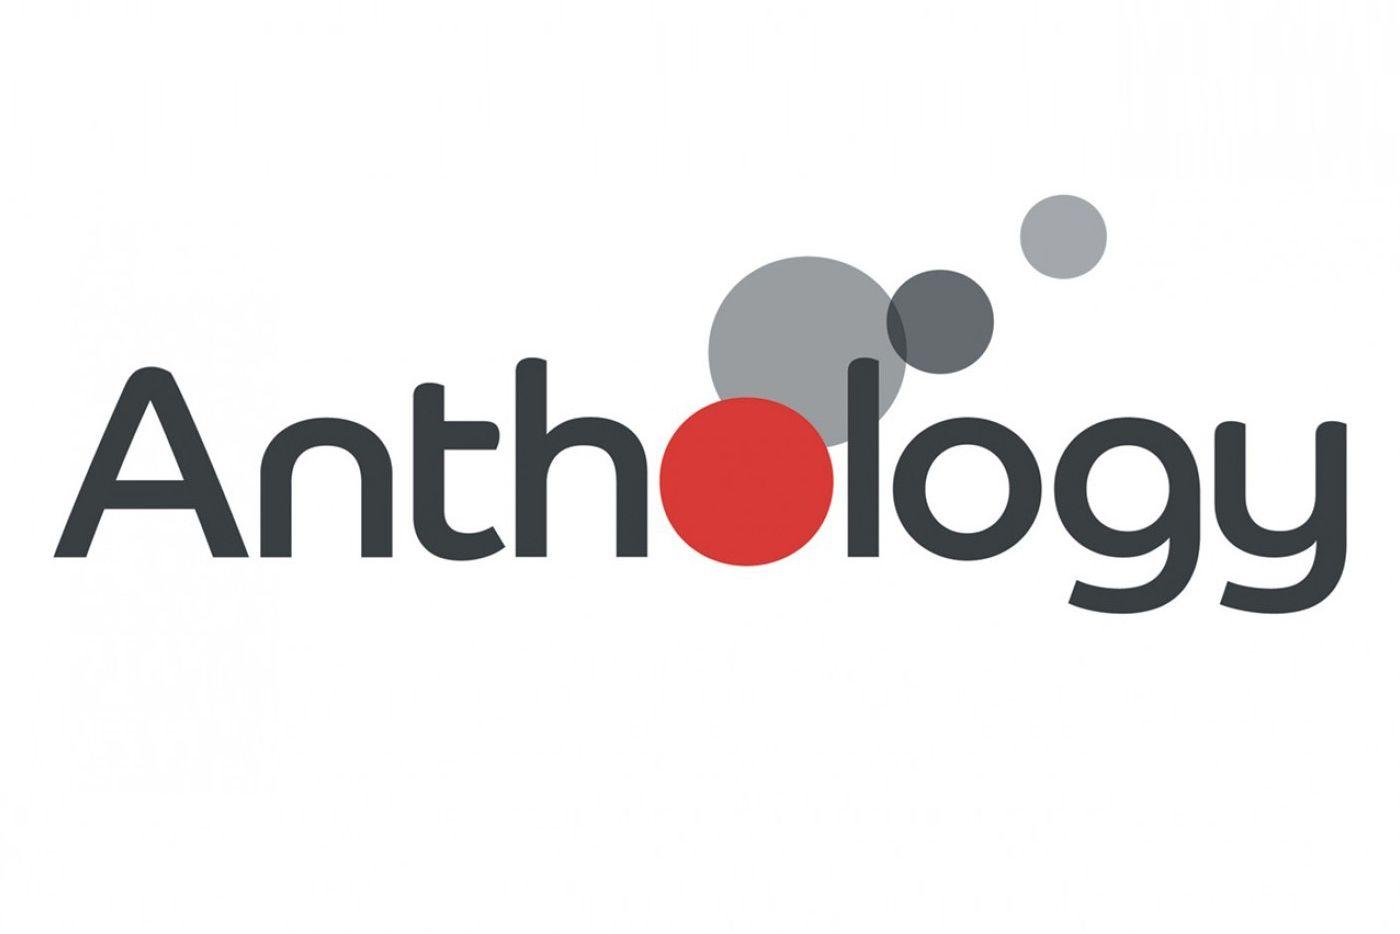 Anthology Logo - Anthology Group emerges from Bob & Co. – TBI Vision